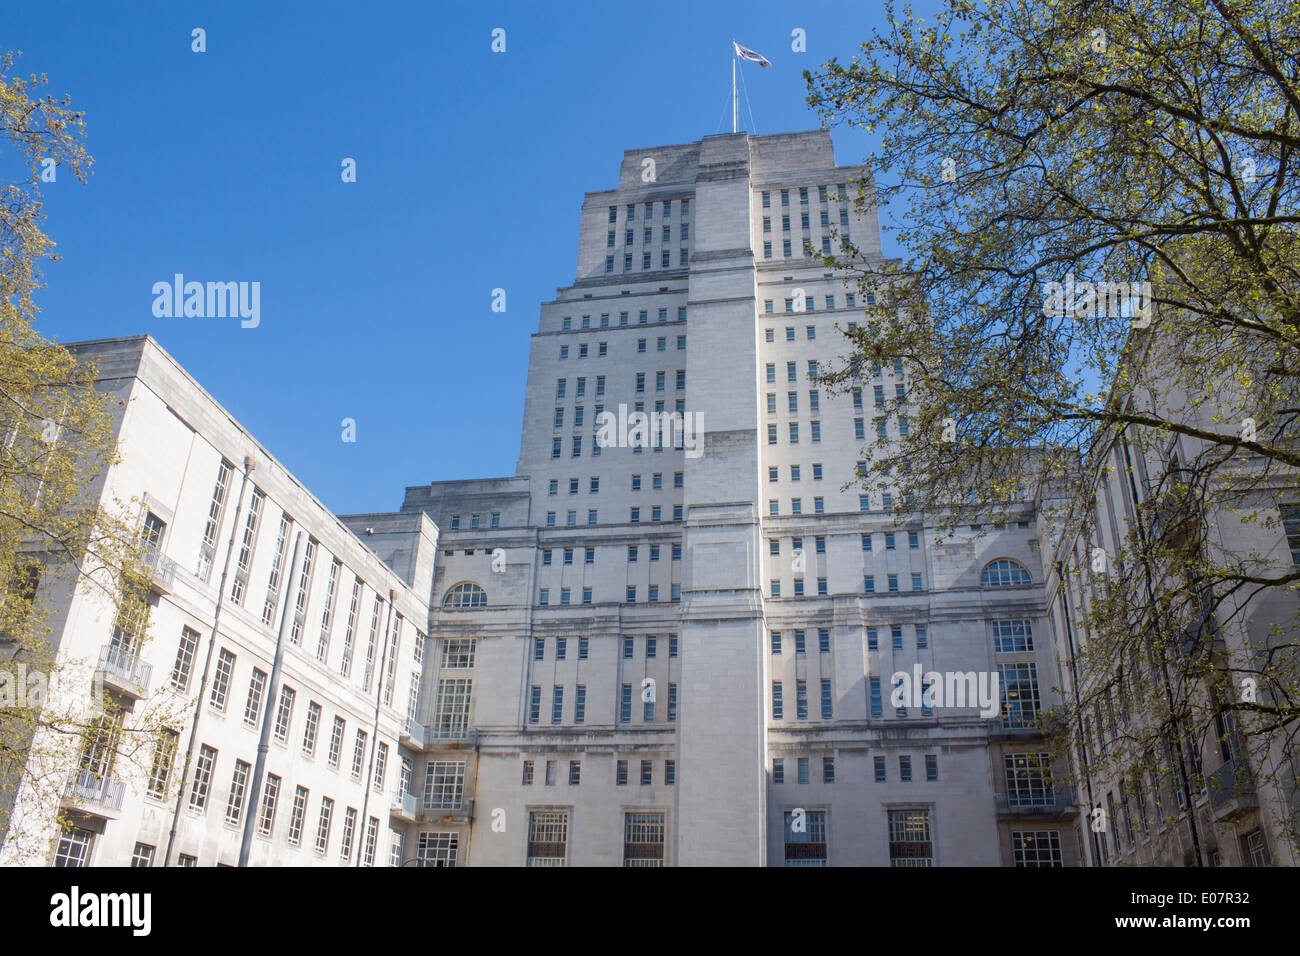 Senate House University of London Bloomsbury London England UK Stock Photo